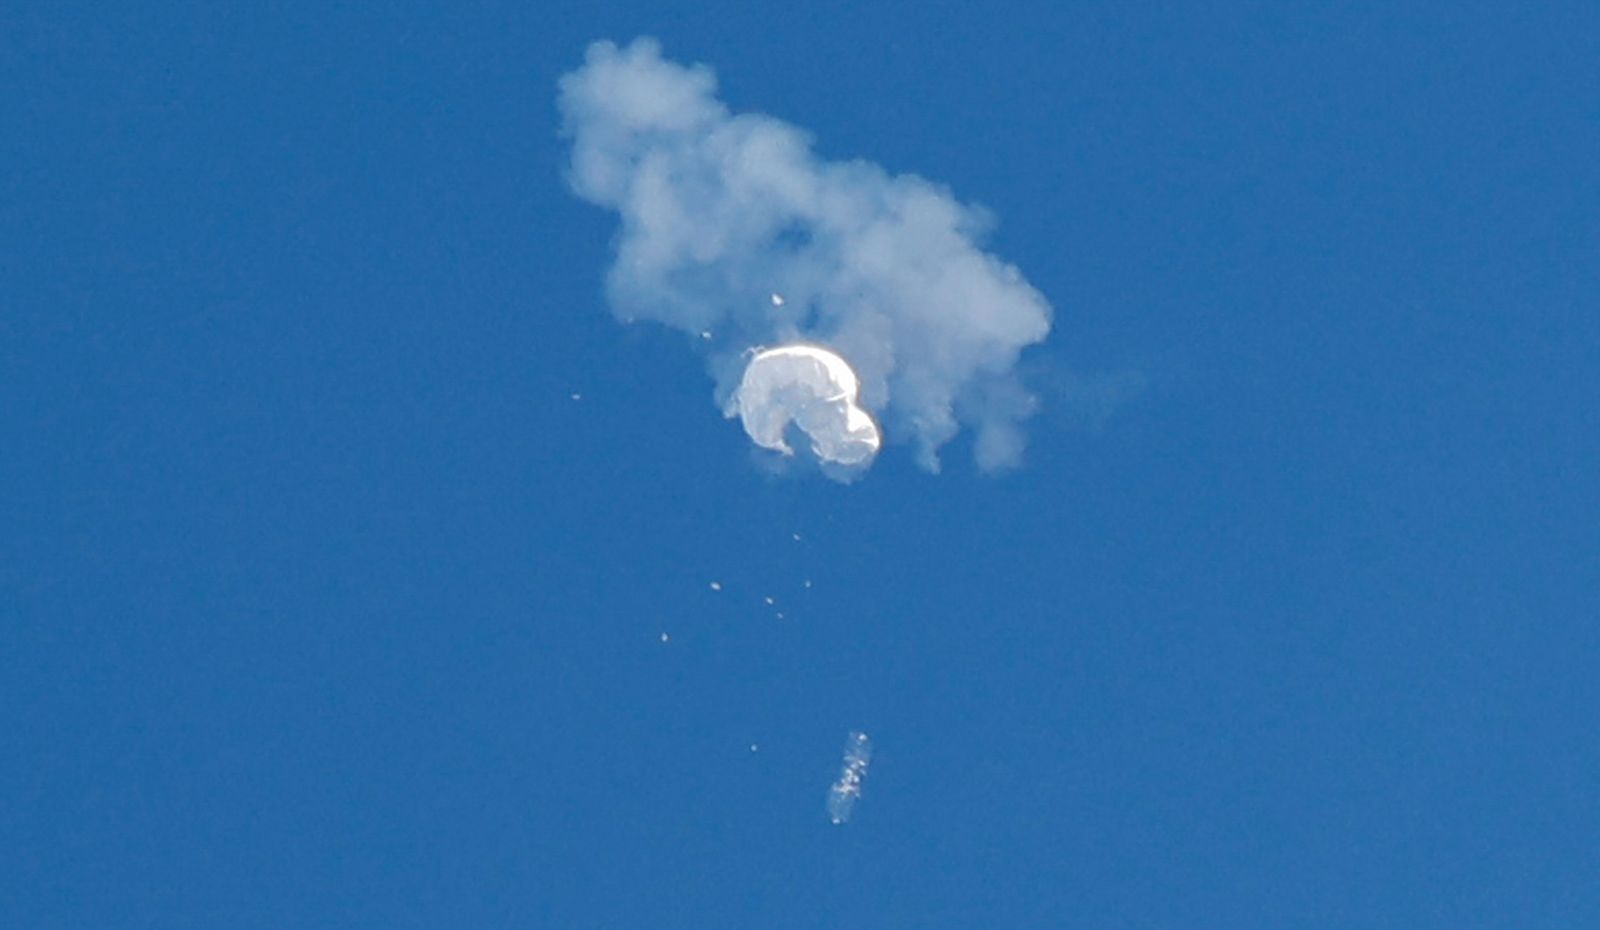 لحظة سقوط المنطاد الصيني إلى المحيط الأطلسي بعد إصابته بصاروخ من مقاتلة أميركية قرب ساحل ساوث كارولاينا- 4 فبراير 2023  - REUTERS